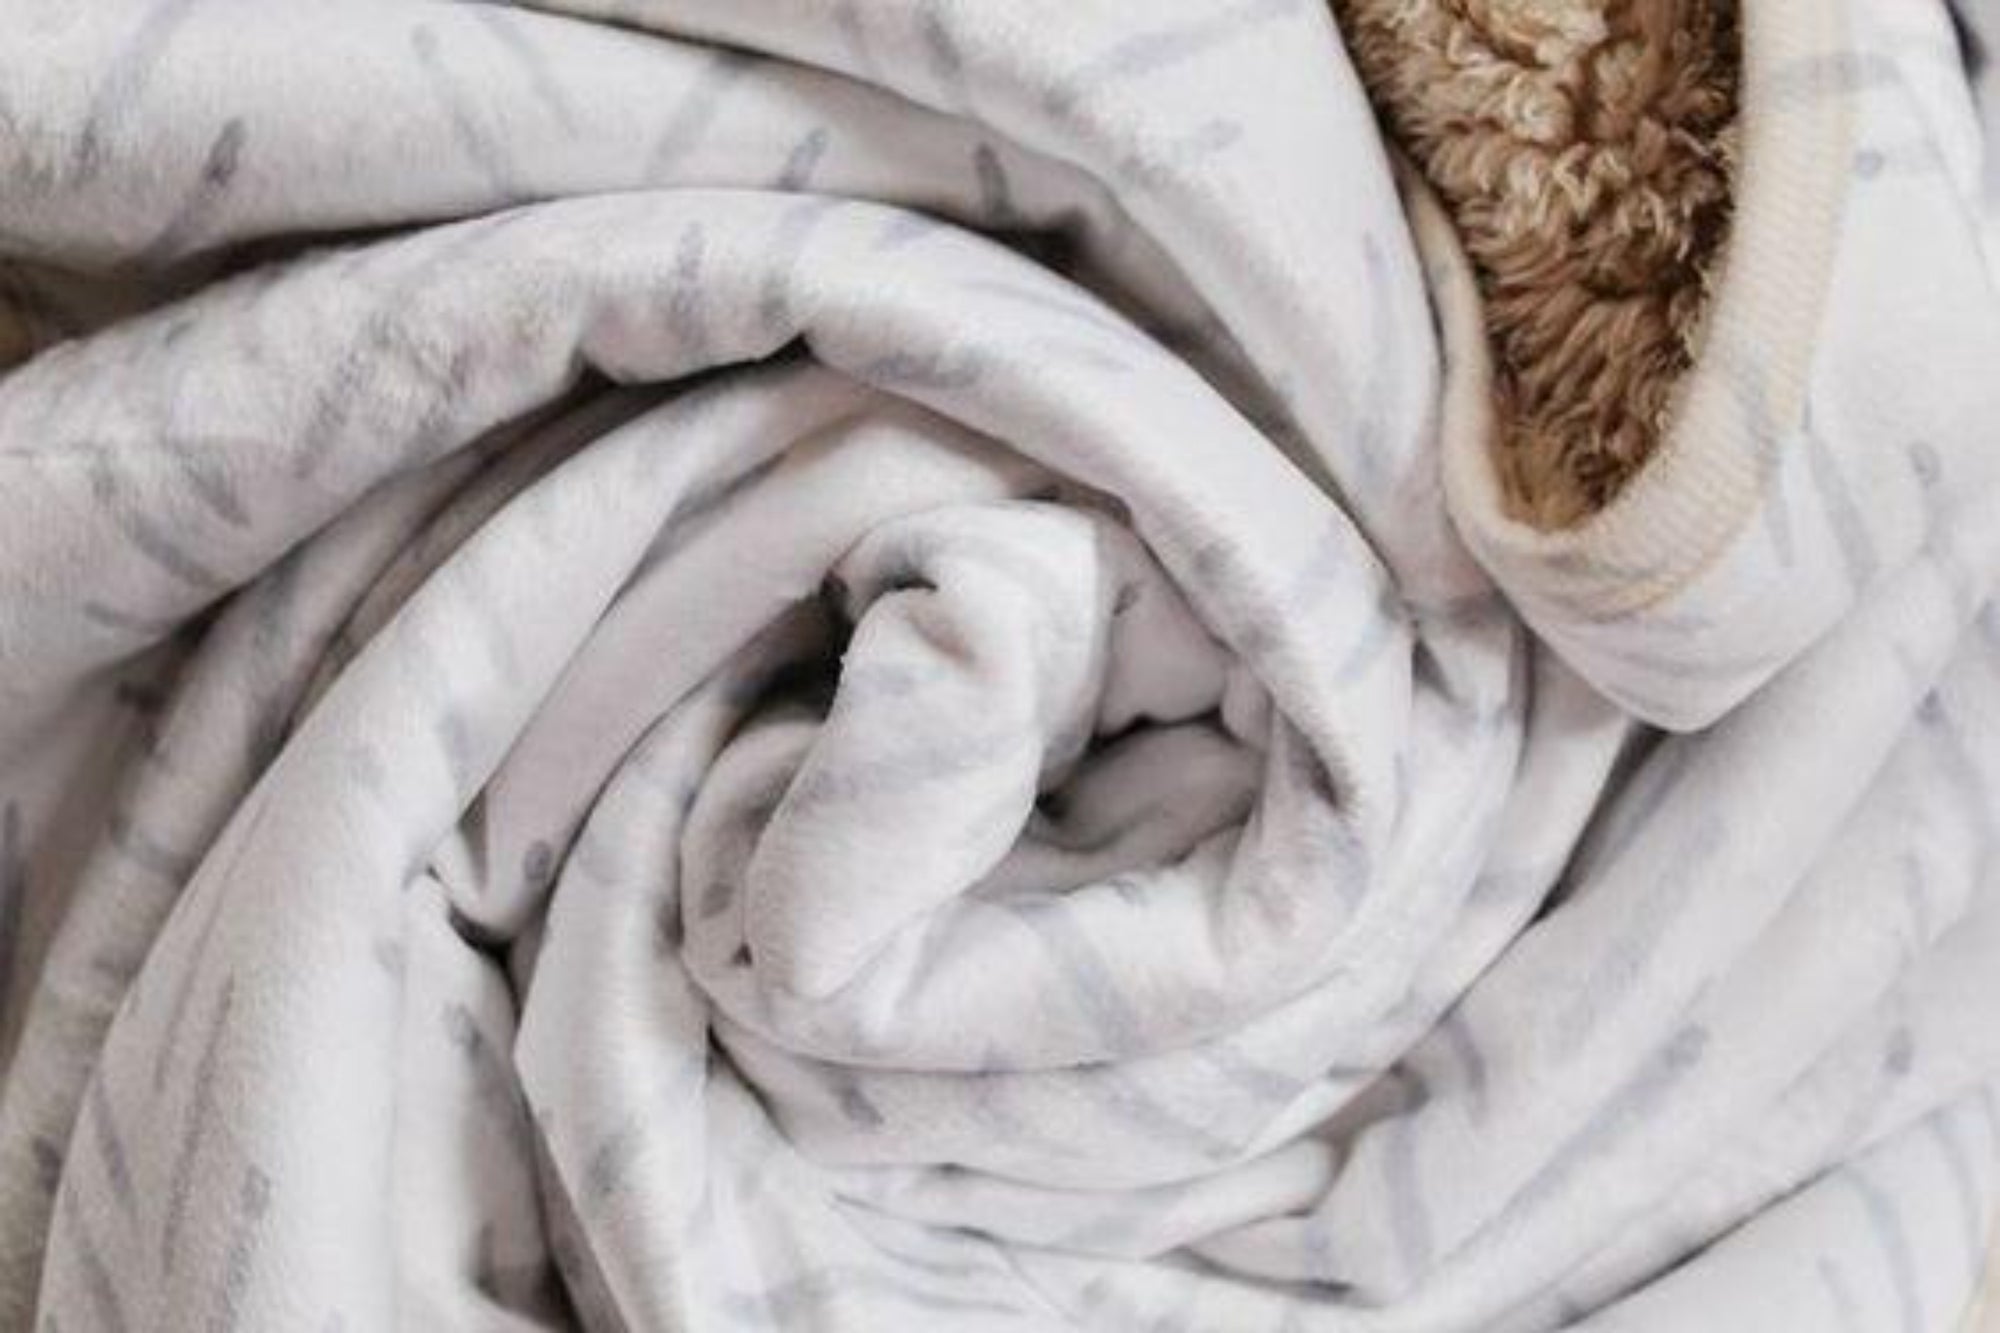 boo and rook minky and sherpa baby blankets boho modern herringbone, gender neutral nursery decor folded